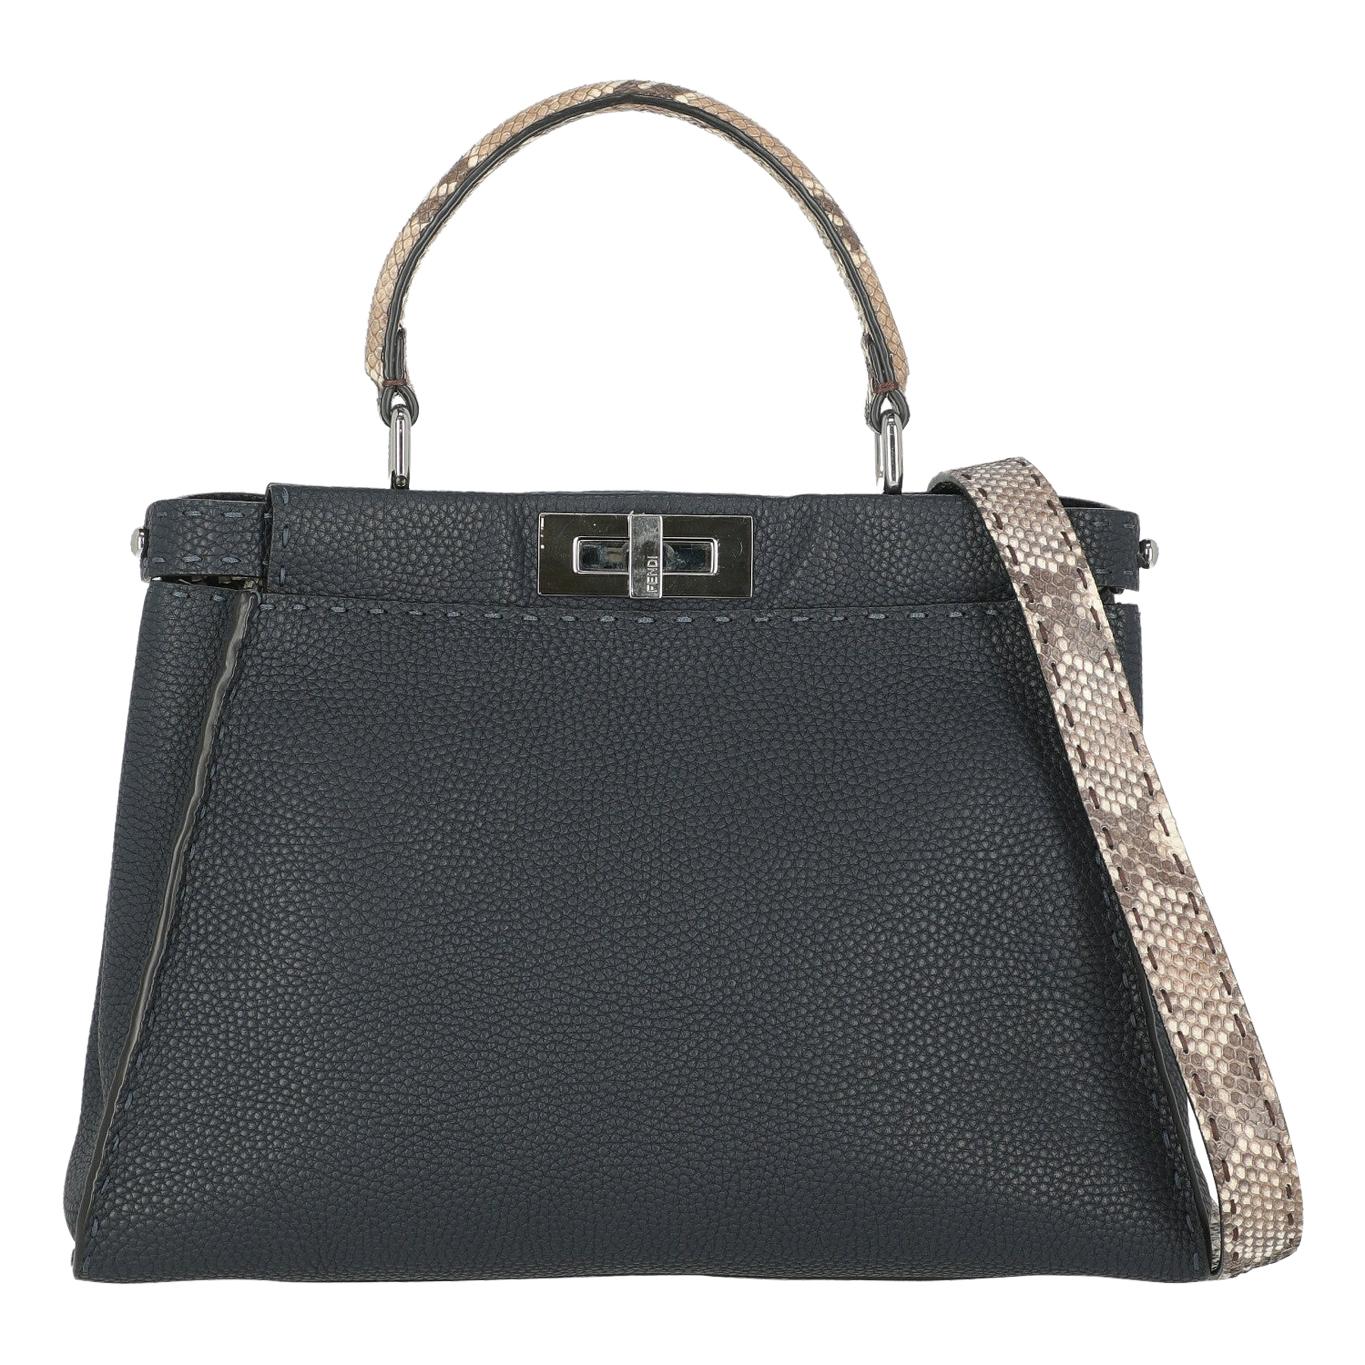 Fendi Women's Handbag Peekaboo Beige/Navy Leather For Sale